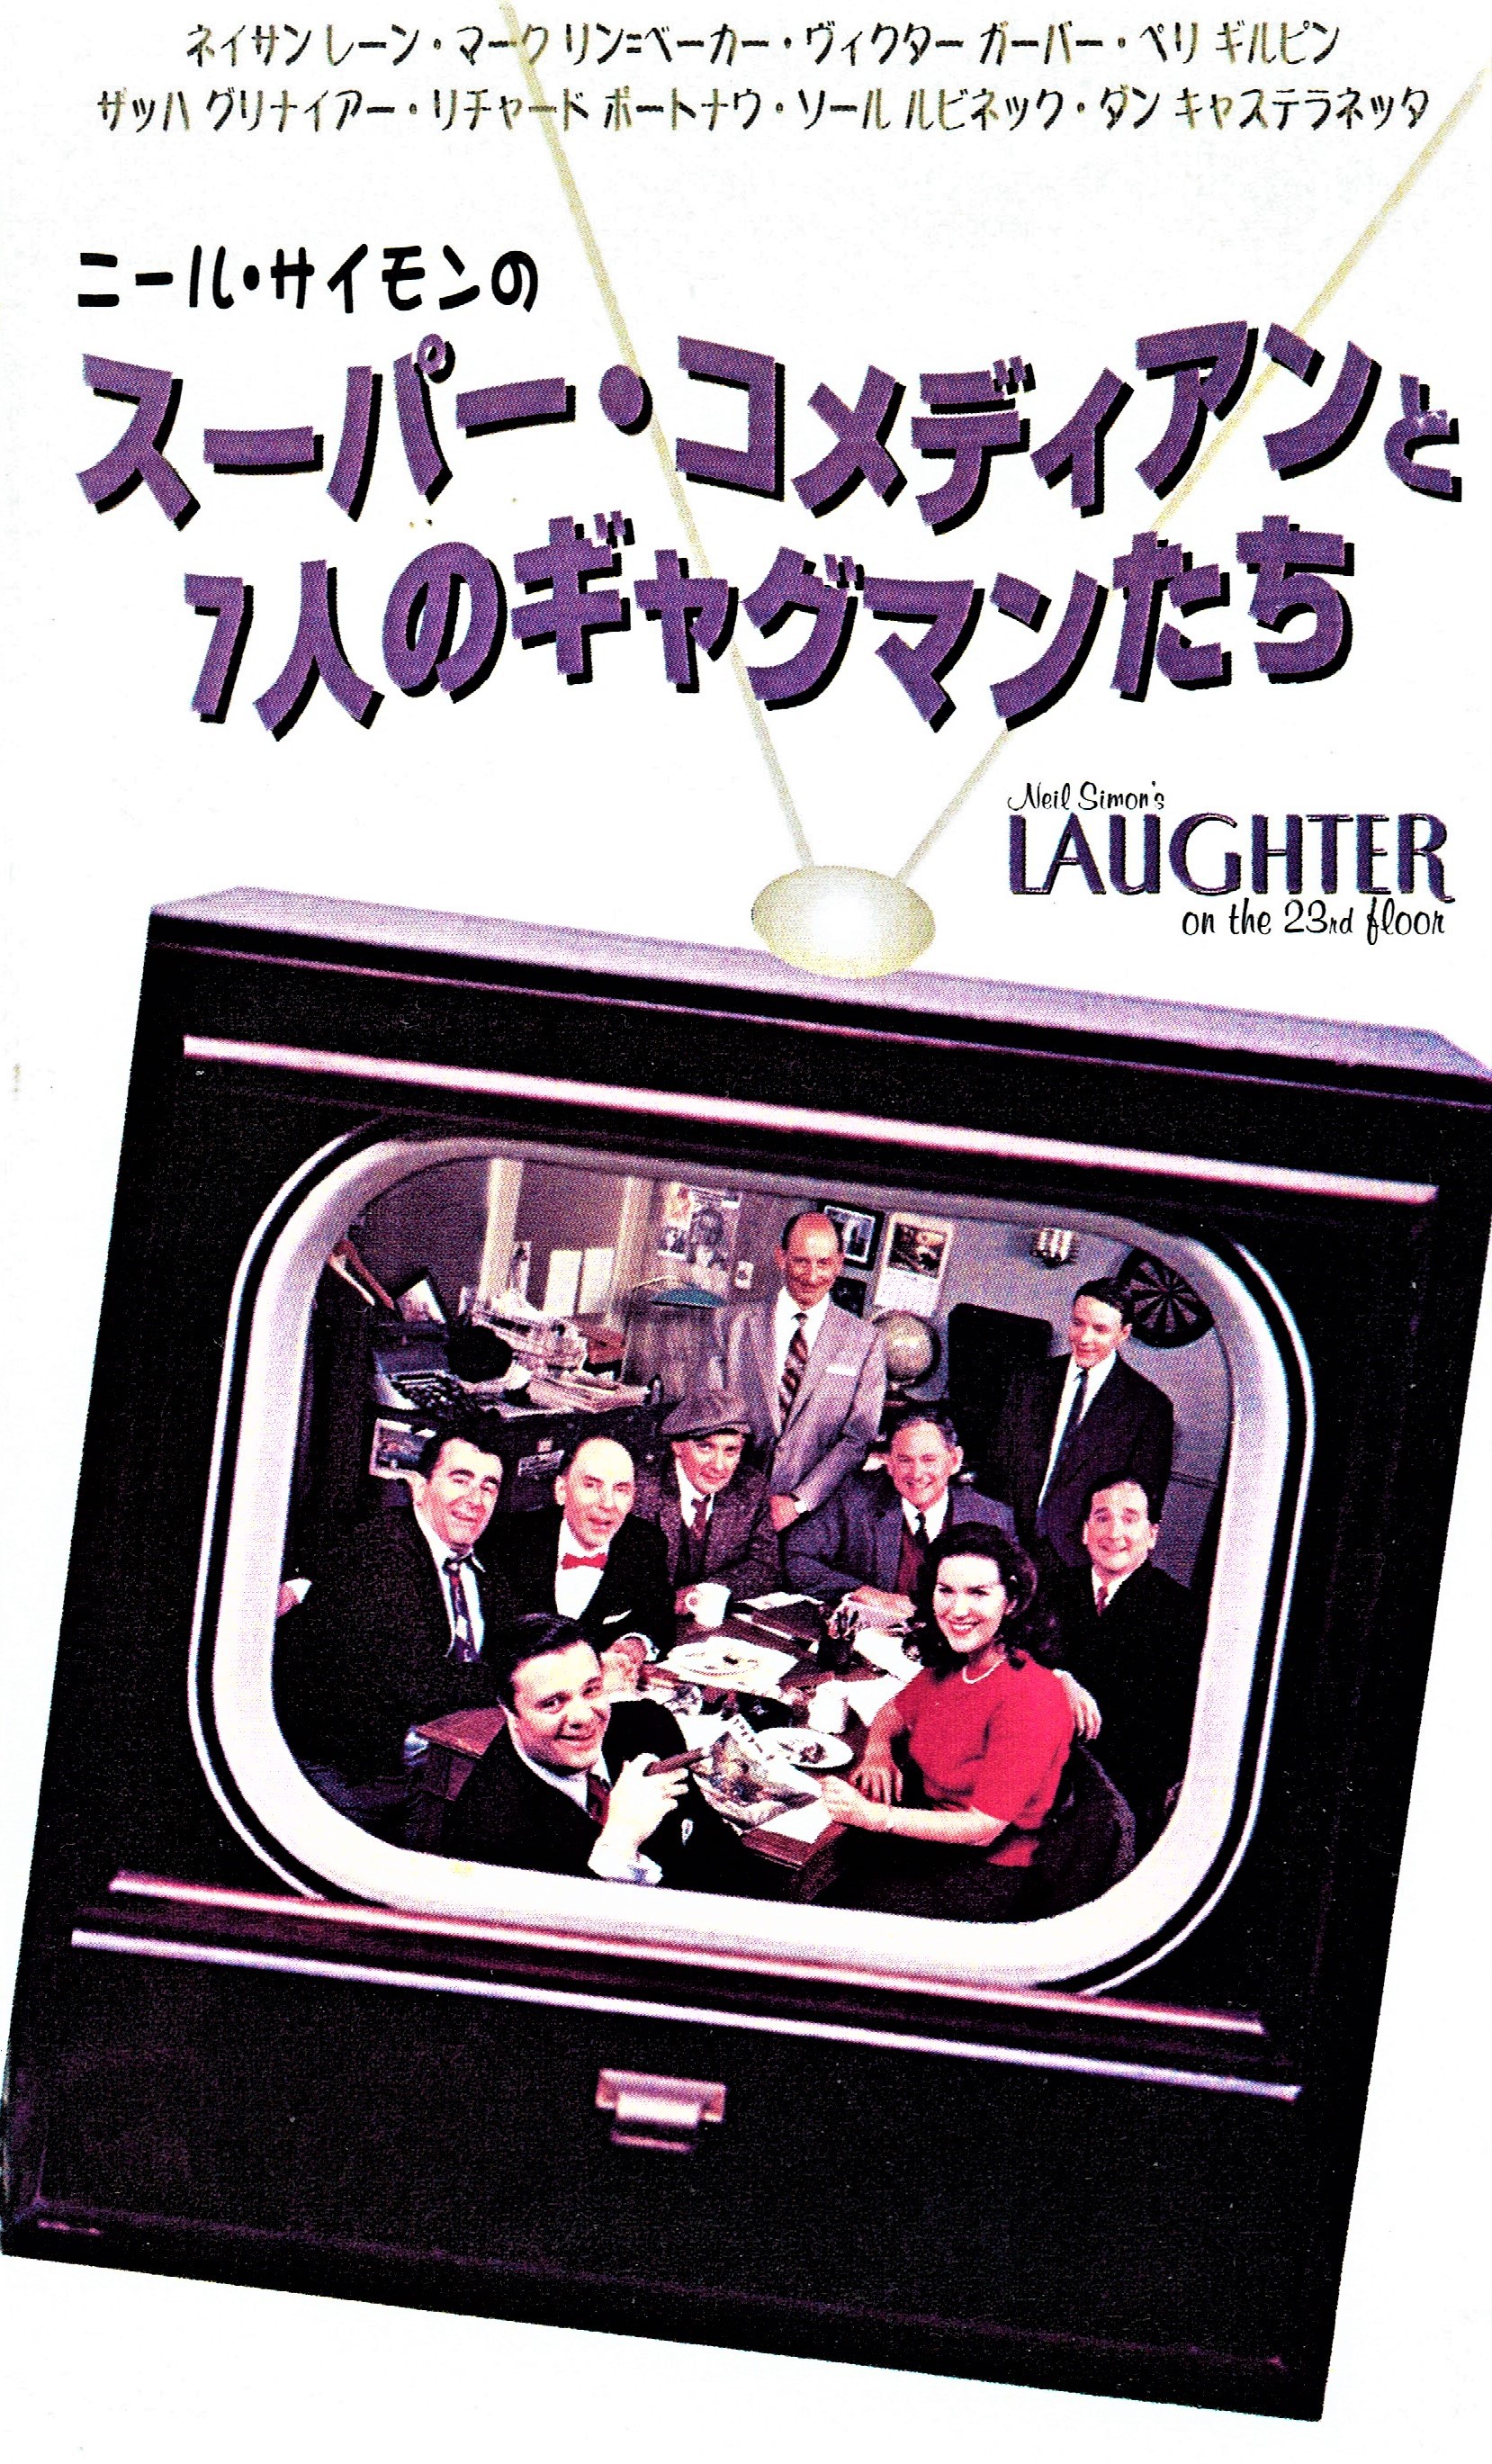 ネイサン・レインが再び主役を務めた、テレビ版『23階の笑い』（2001年）。日本では上記の長いタイトルでビデオ・リリースされたが、惜しくも未DVD化。